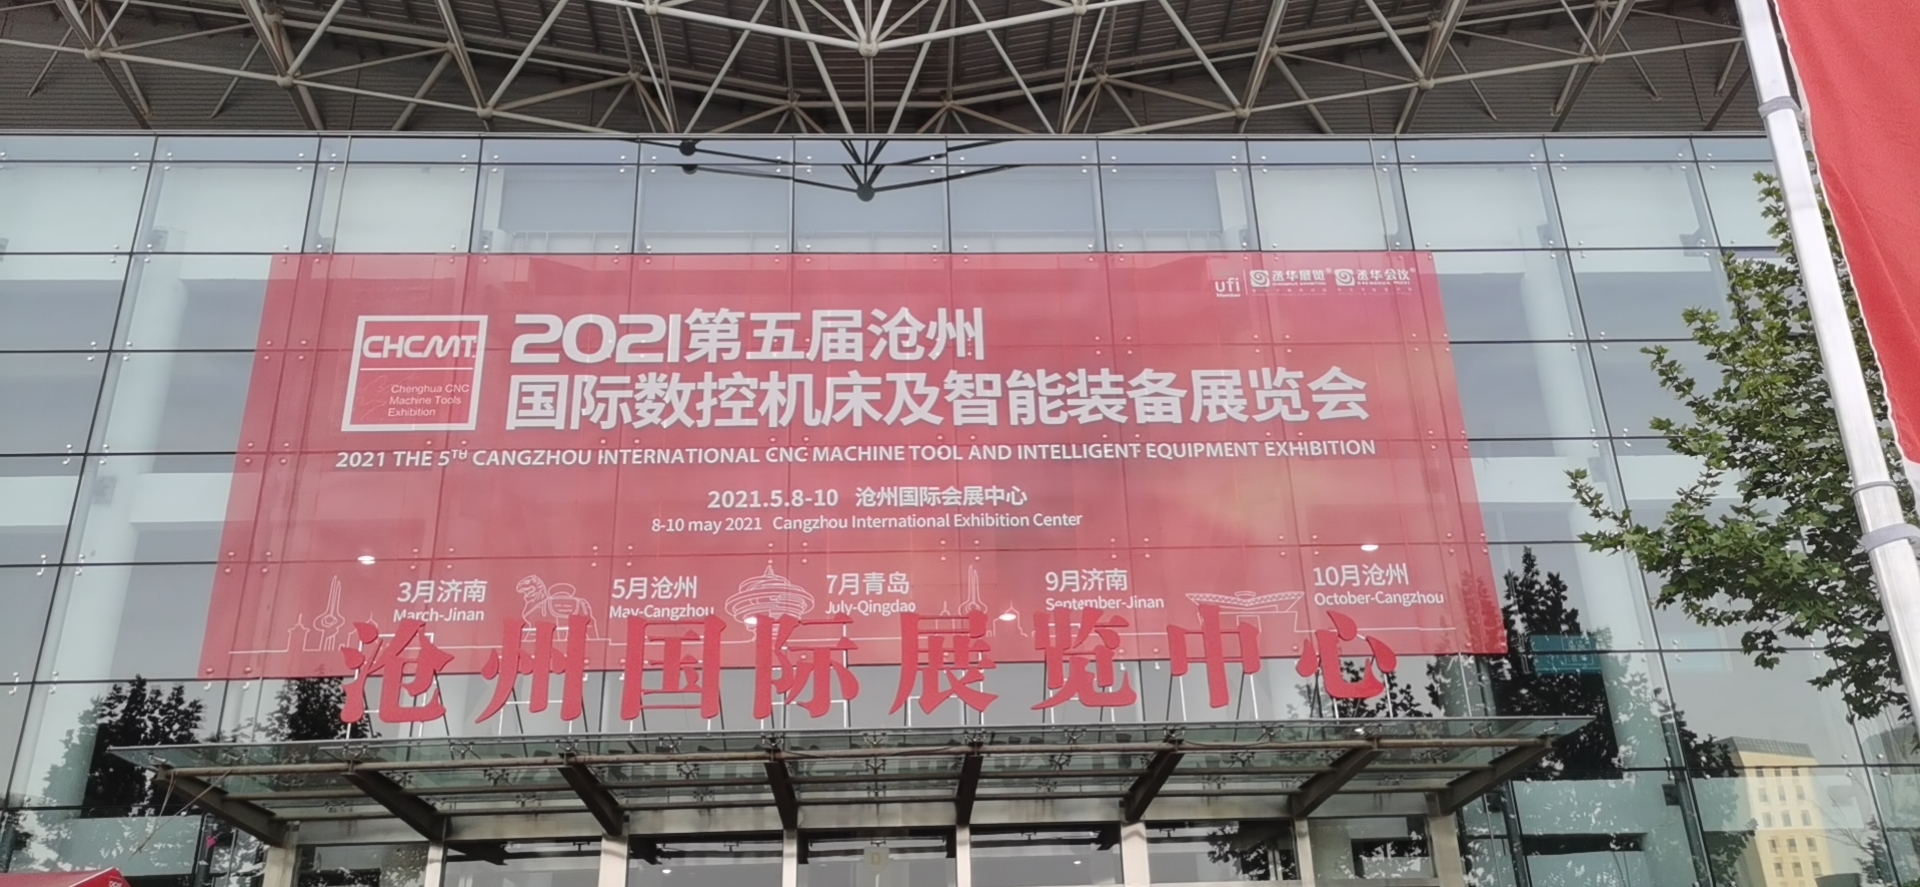 2021第五屆滄州國際數控機床及智能裝備展覽會